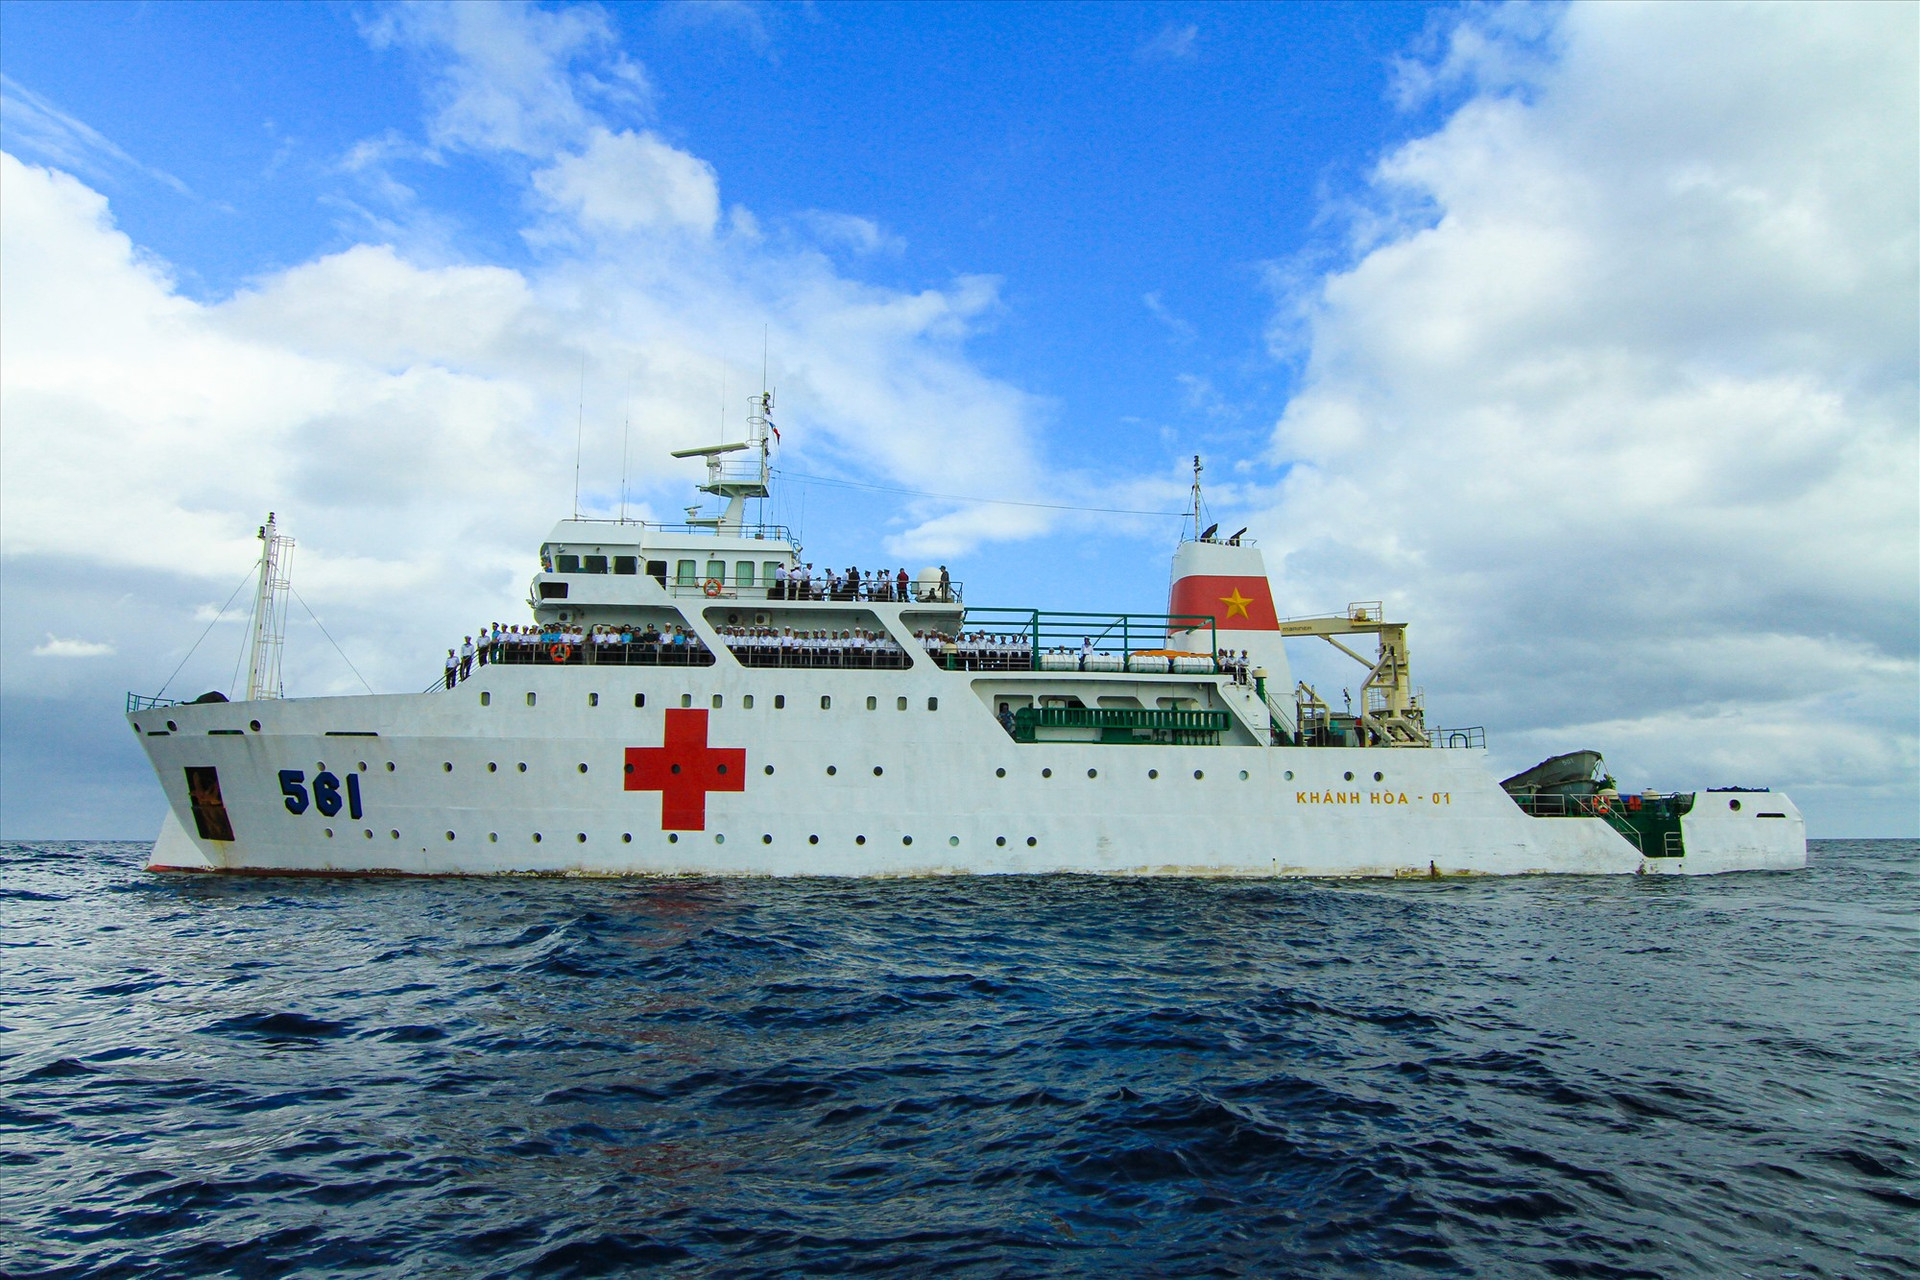 Tàu 561 - Bệnh viện trên biển. Ảnh: T.C